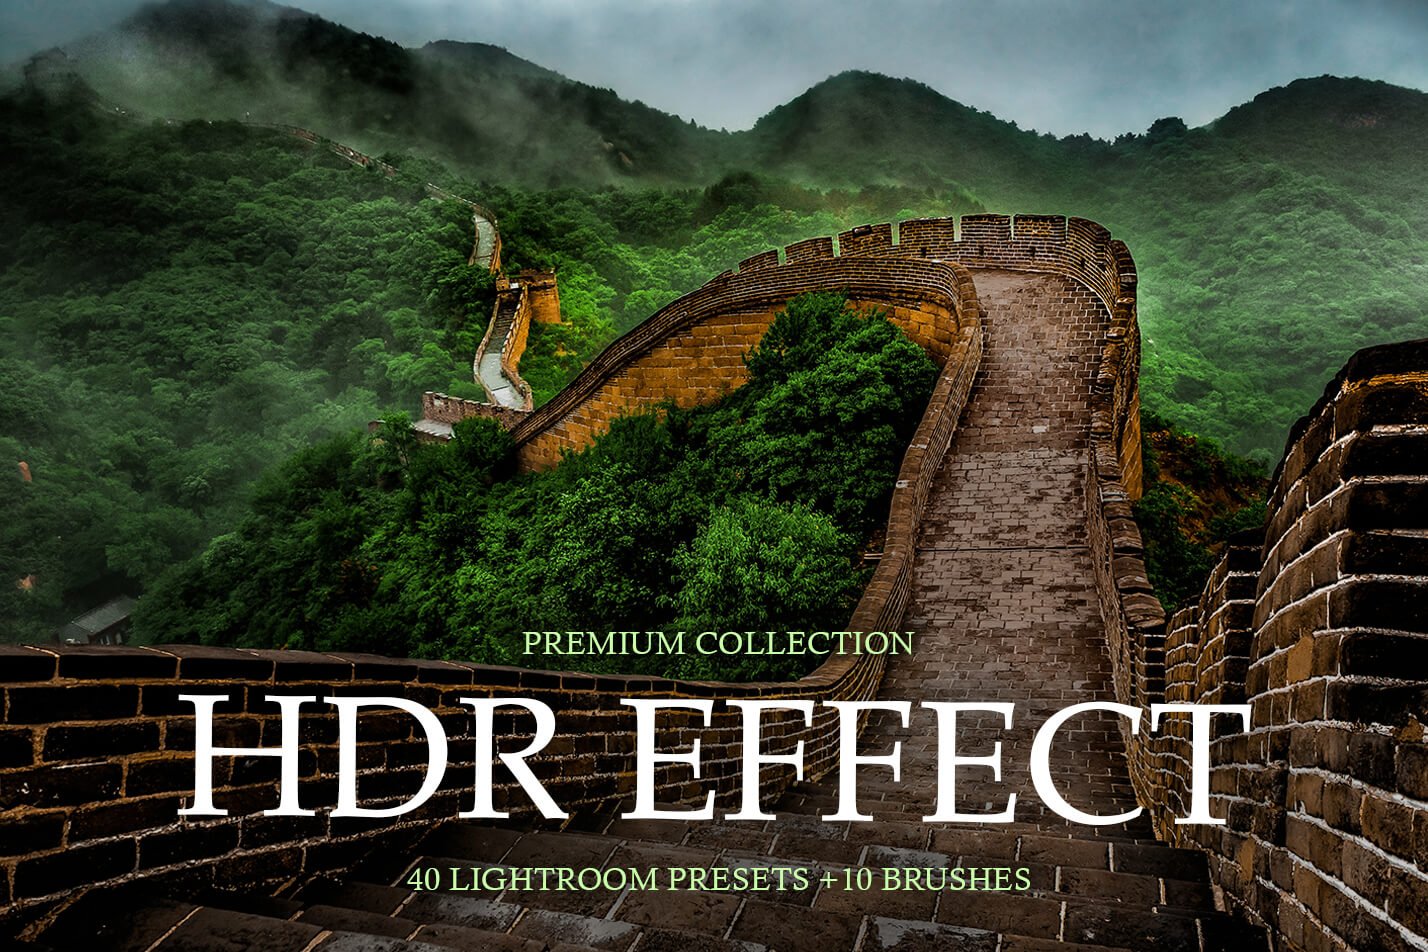 HDR Effect Lightroom Presetscover image.